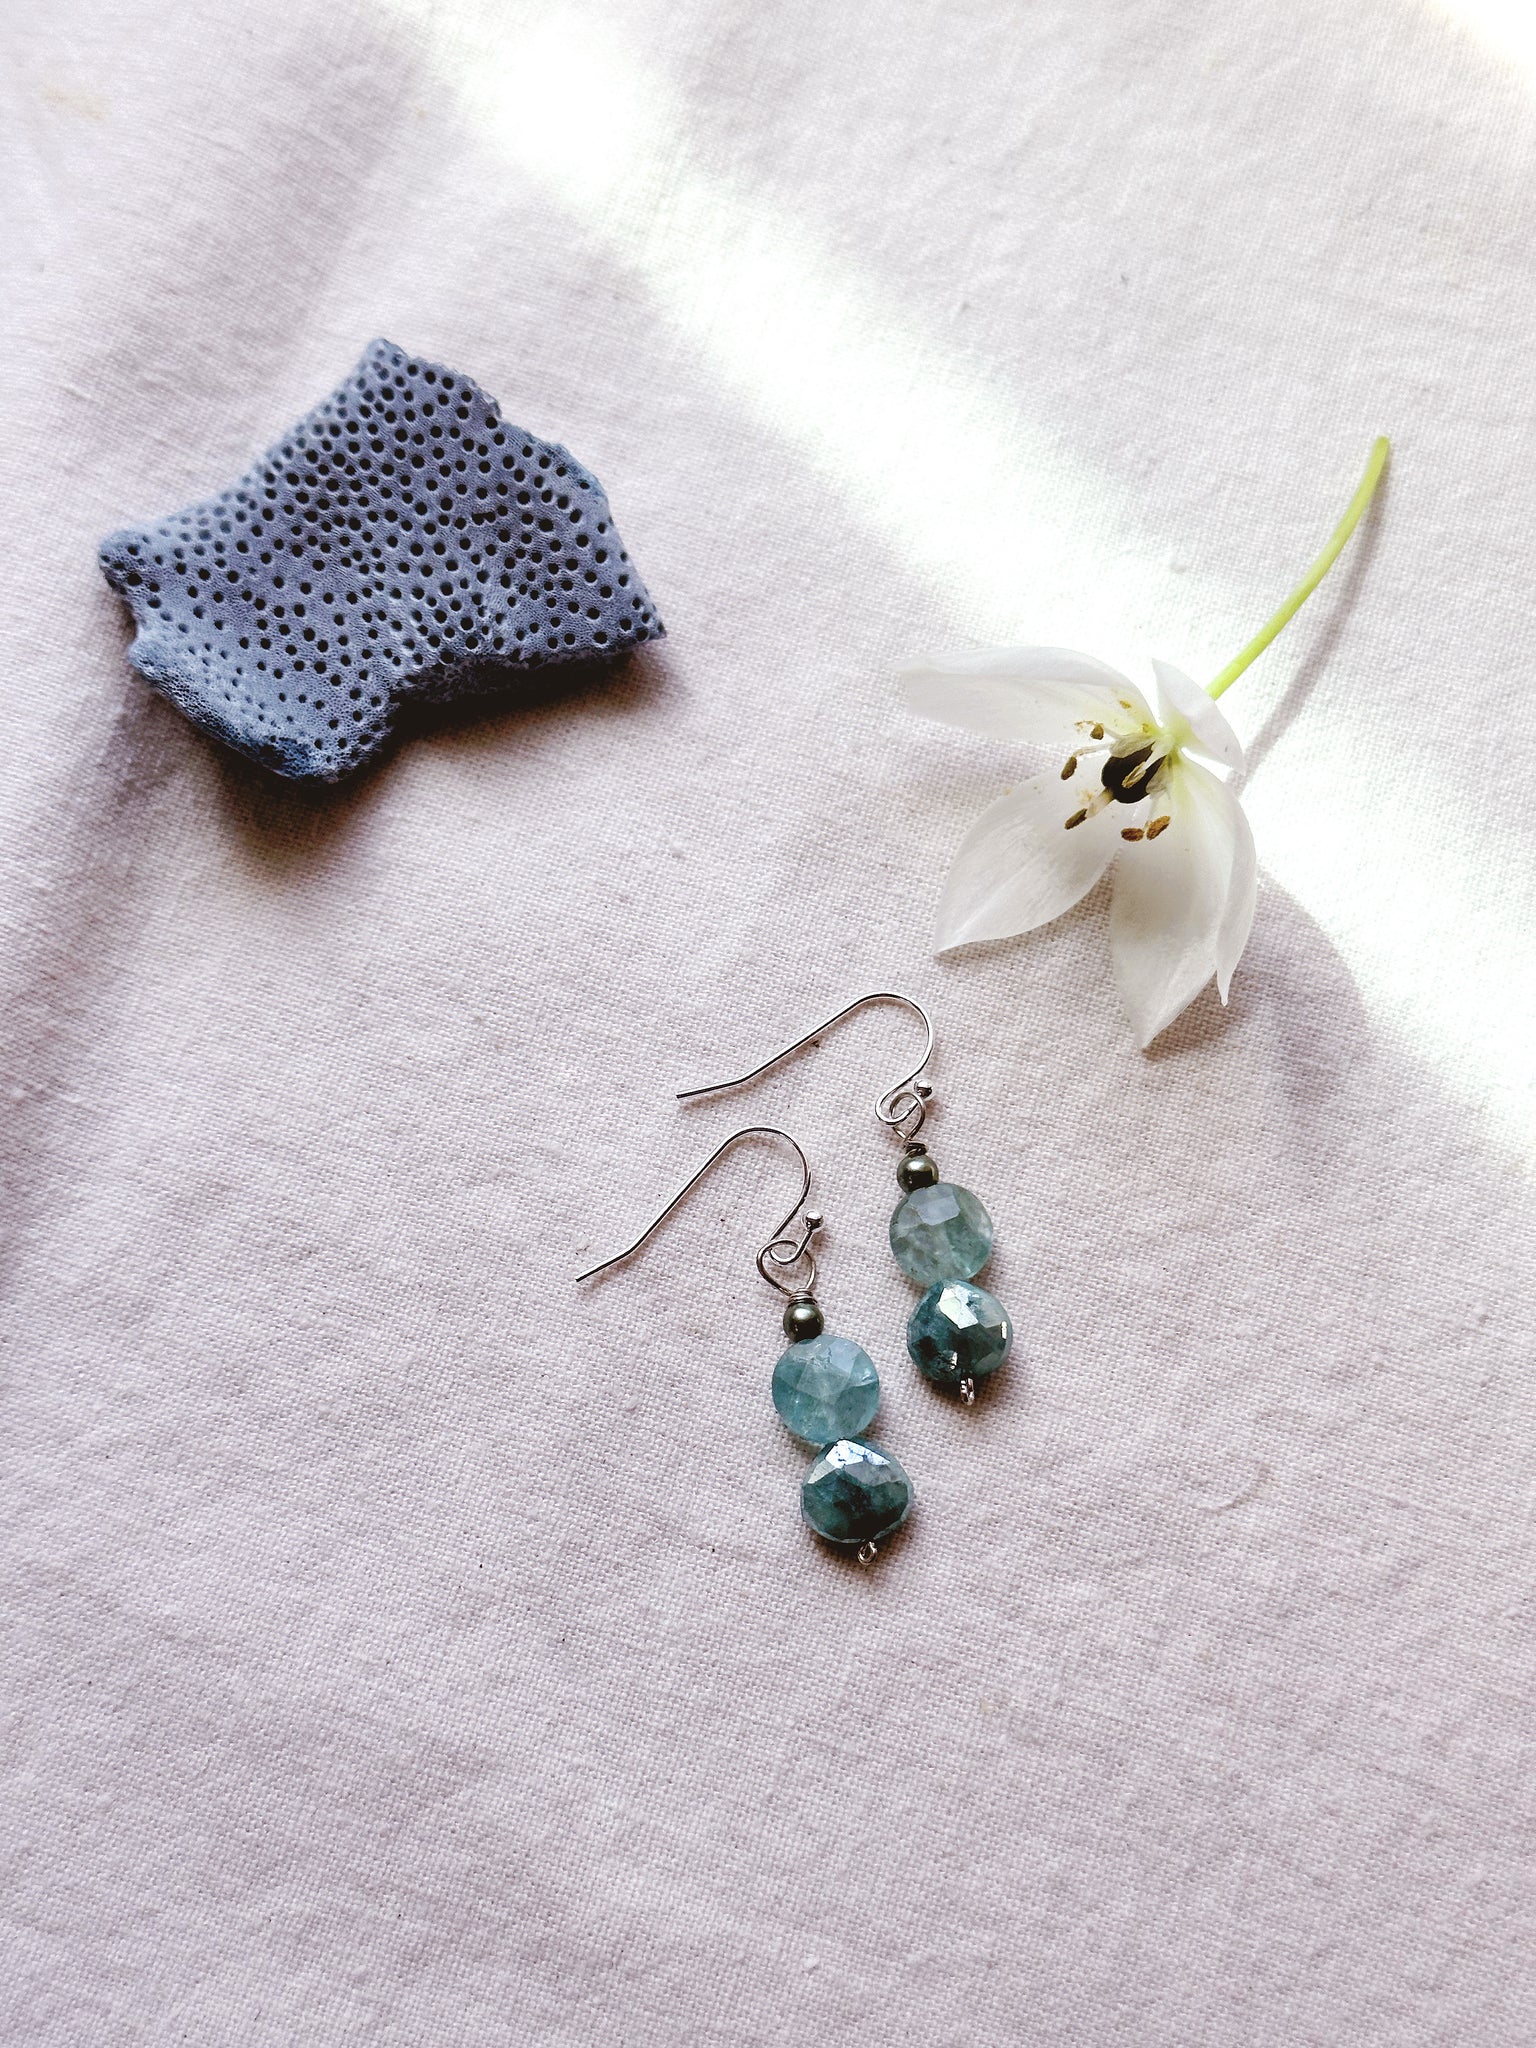 Nereid + Apatite + Green Moonstone + Freshwater Pearl earrings